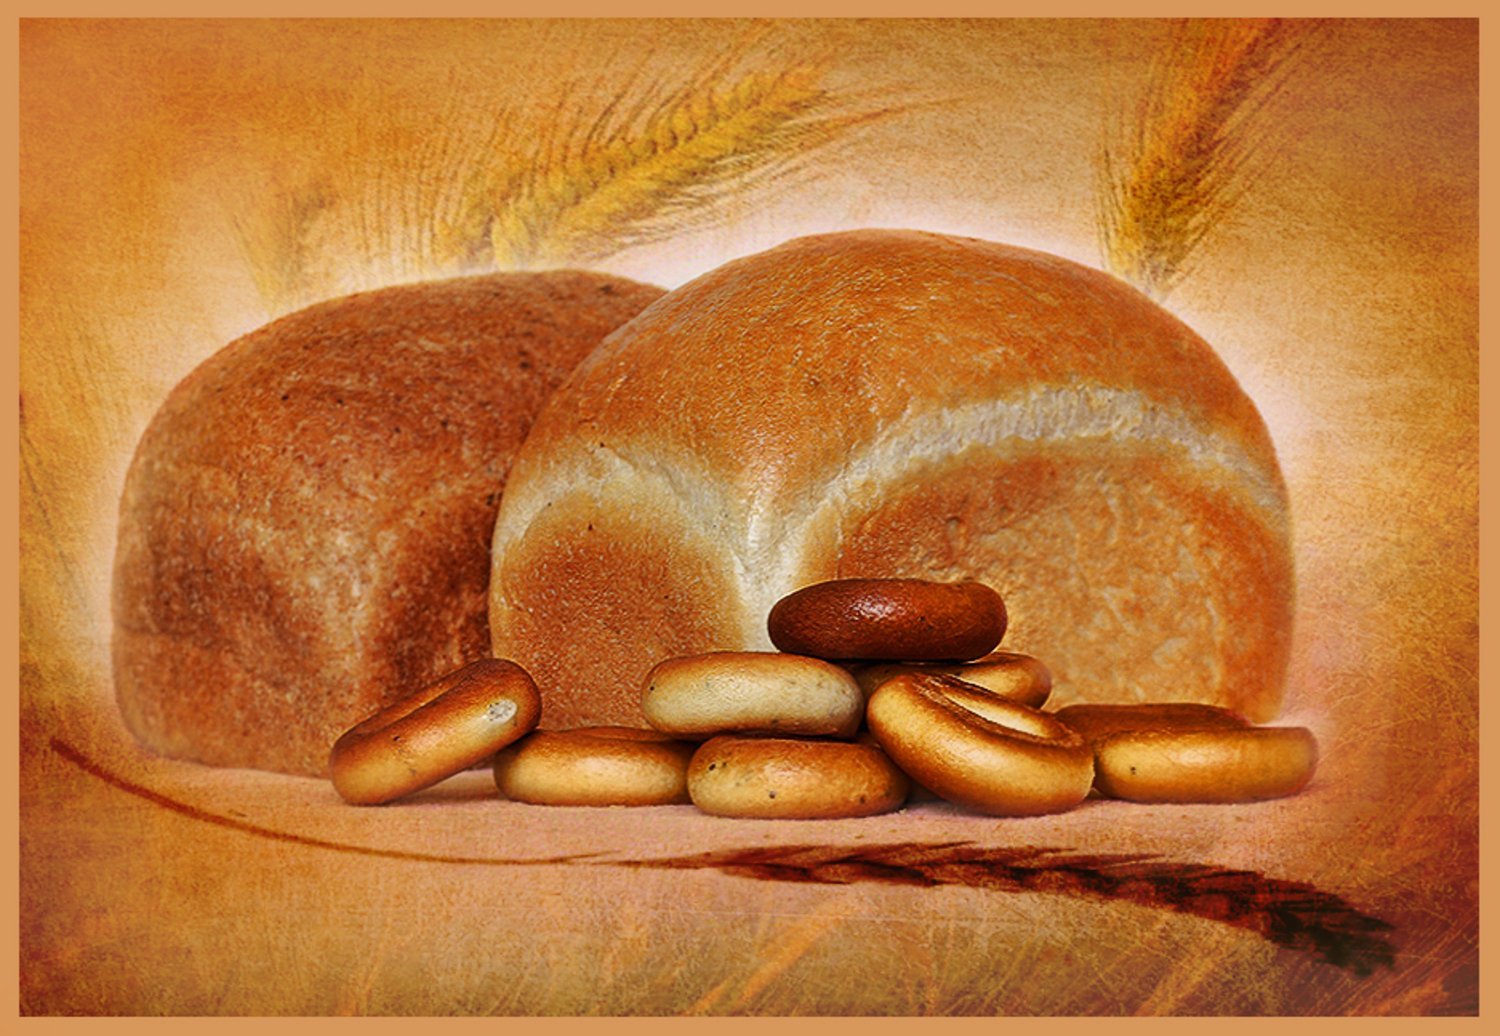 картинки про хлеб для детей